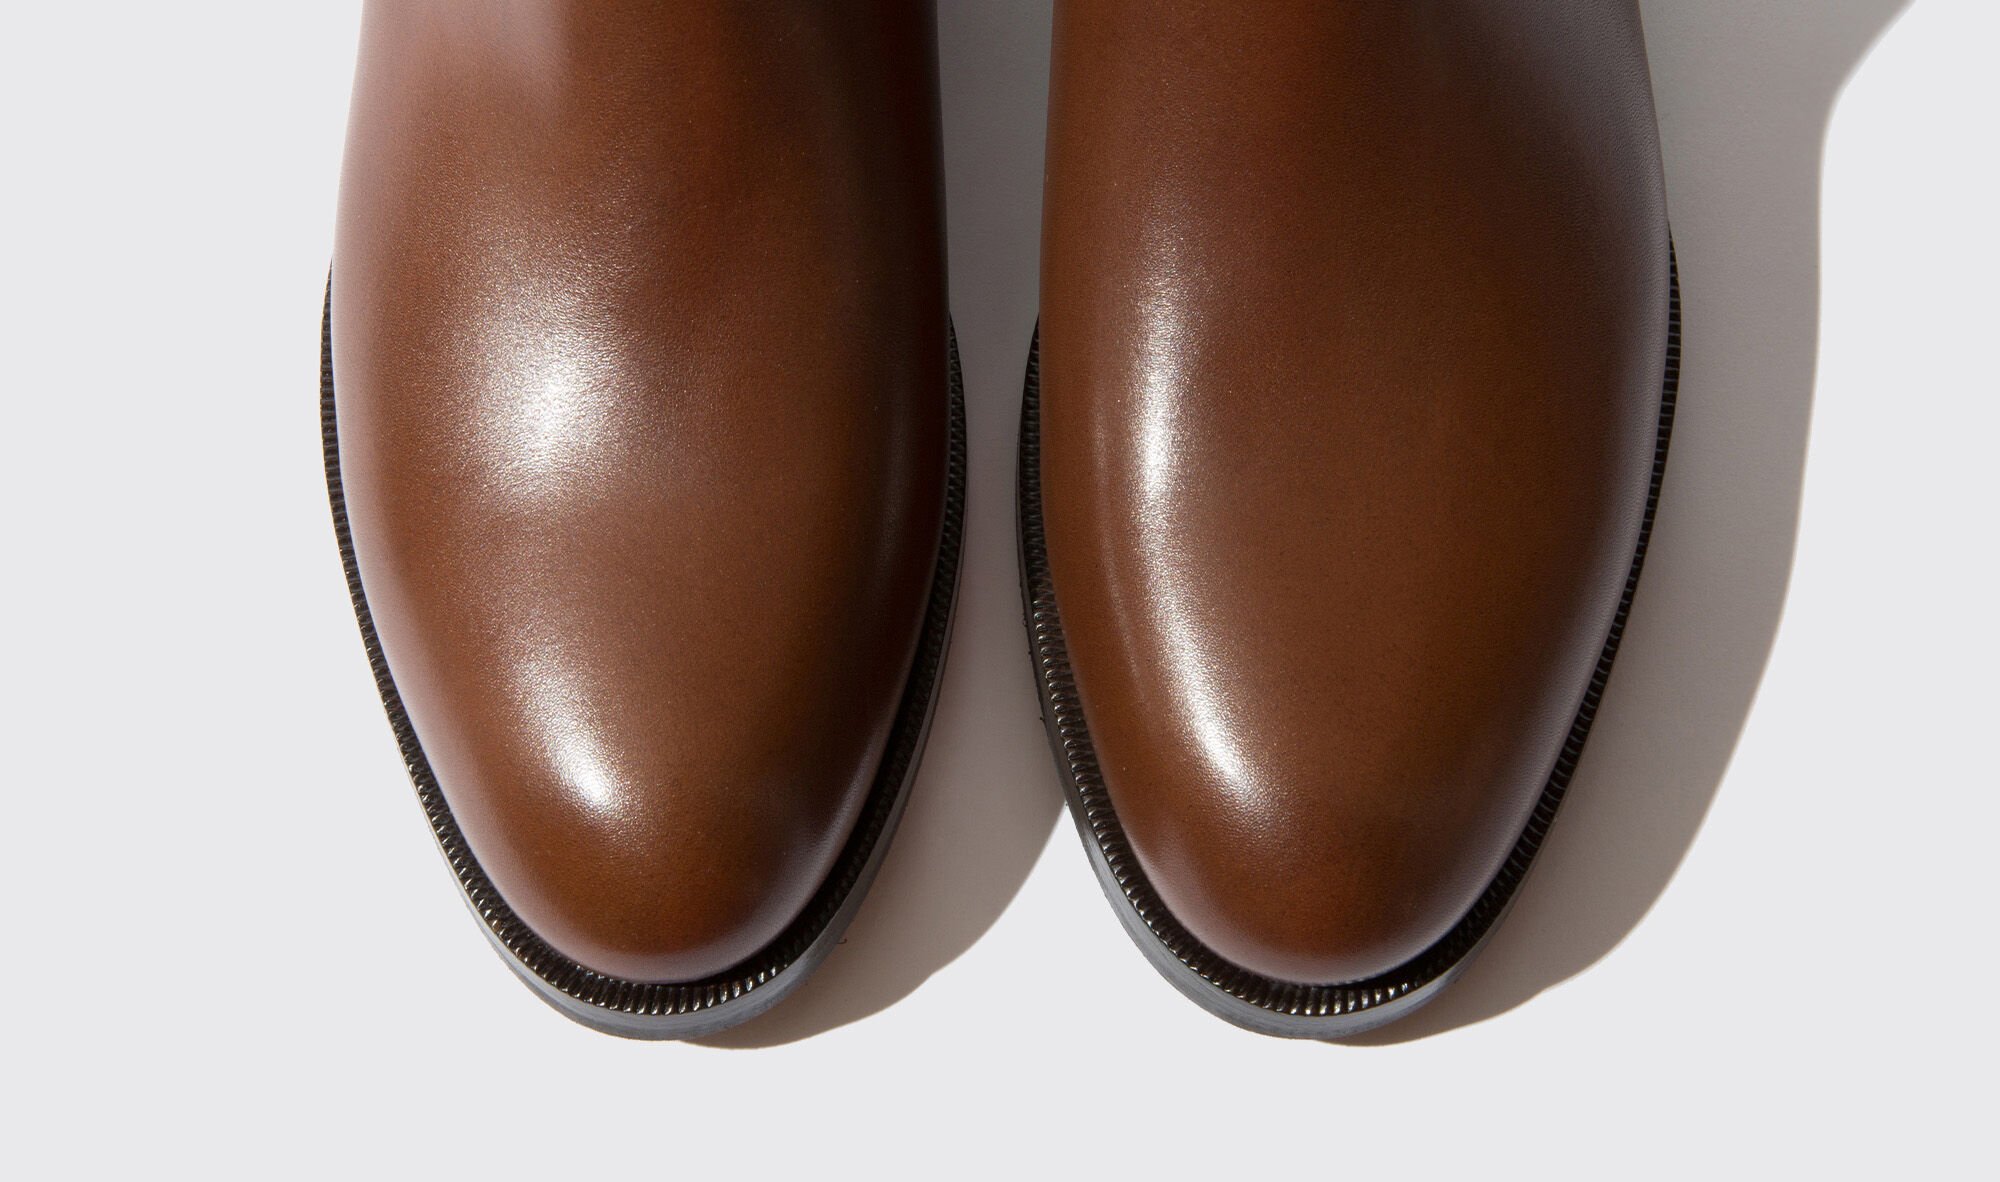 Scarosso Elle platform leather boots - Black